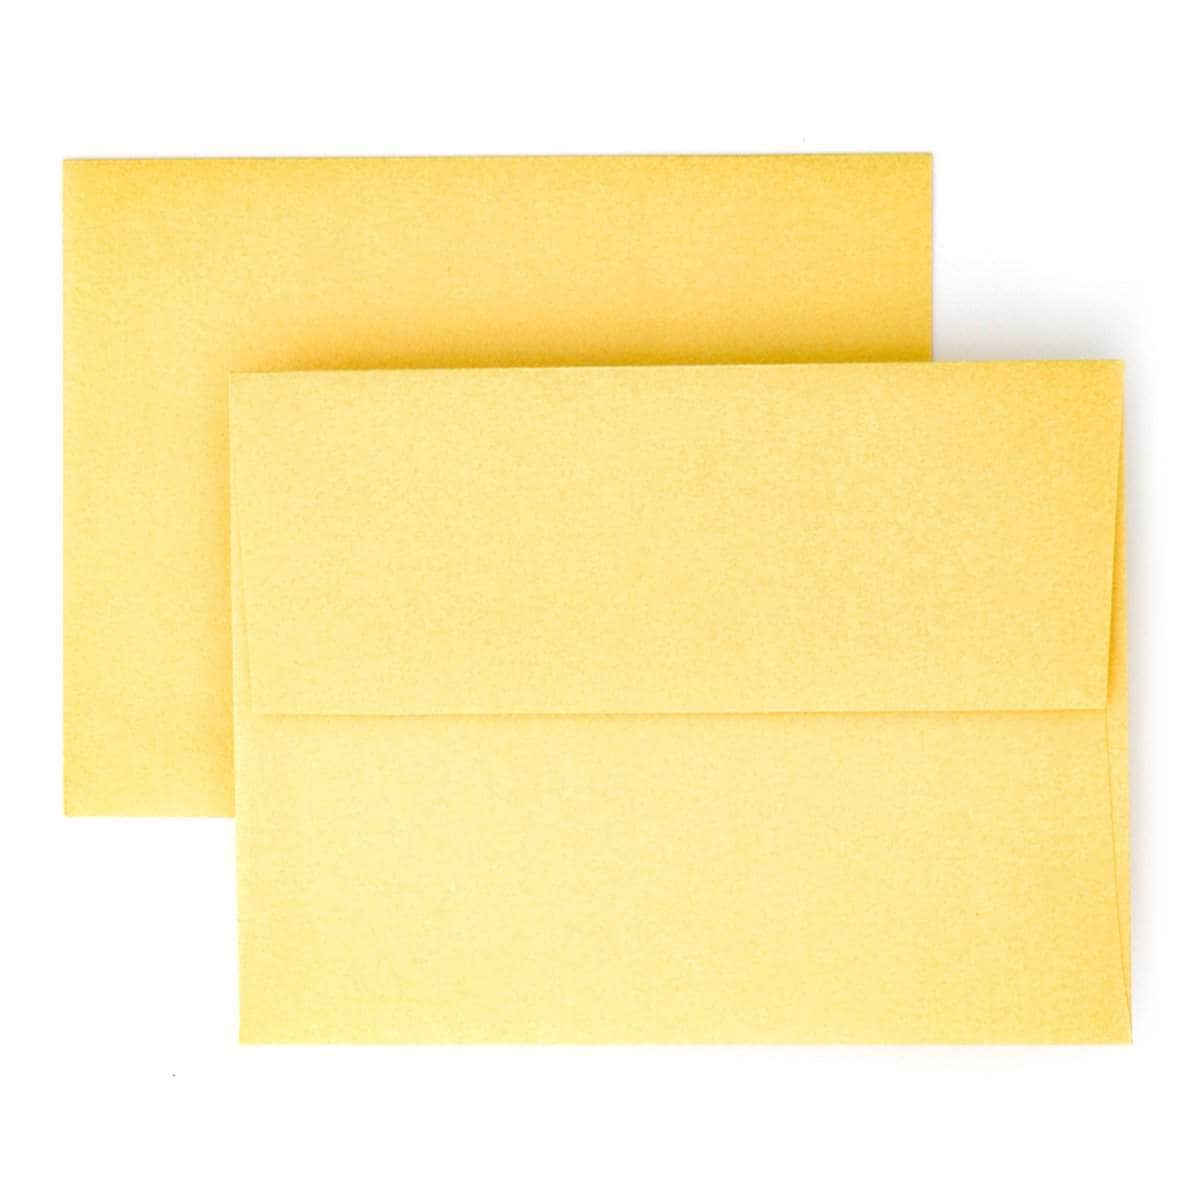 Papermill Envelope Polished Gold Envelope (12 envelopes/set)